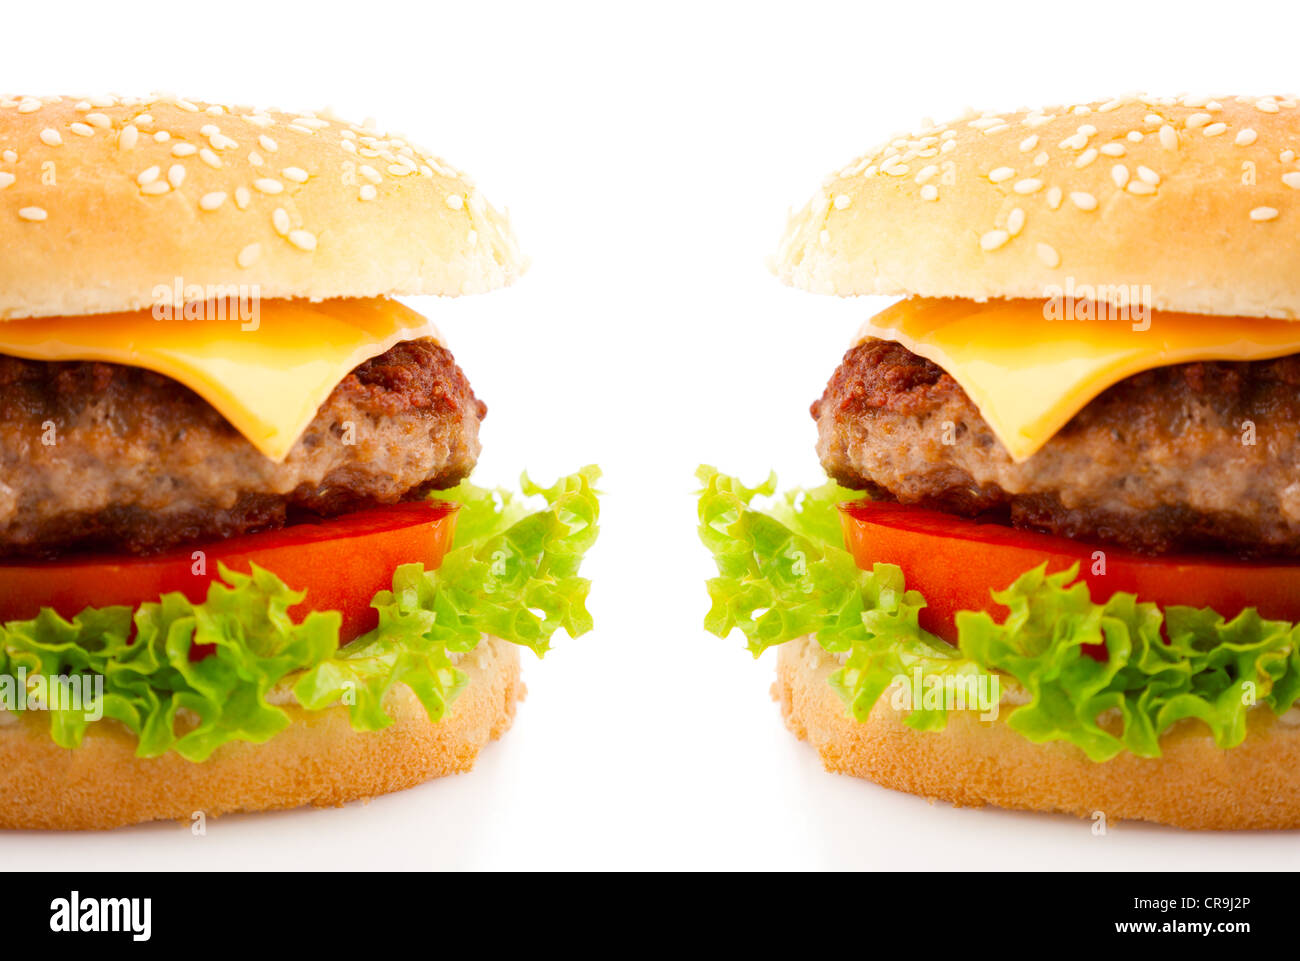 Tasty hamburger on white background Stock Photo